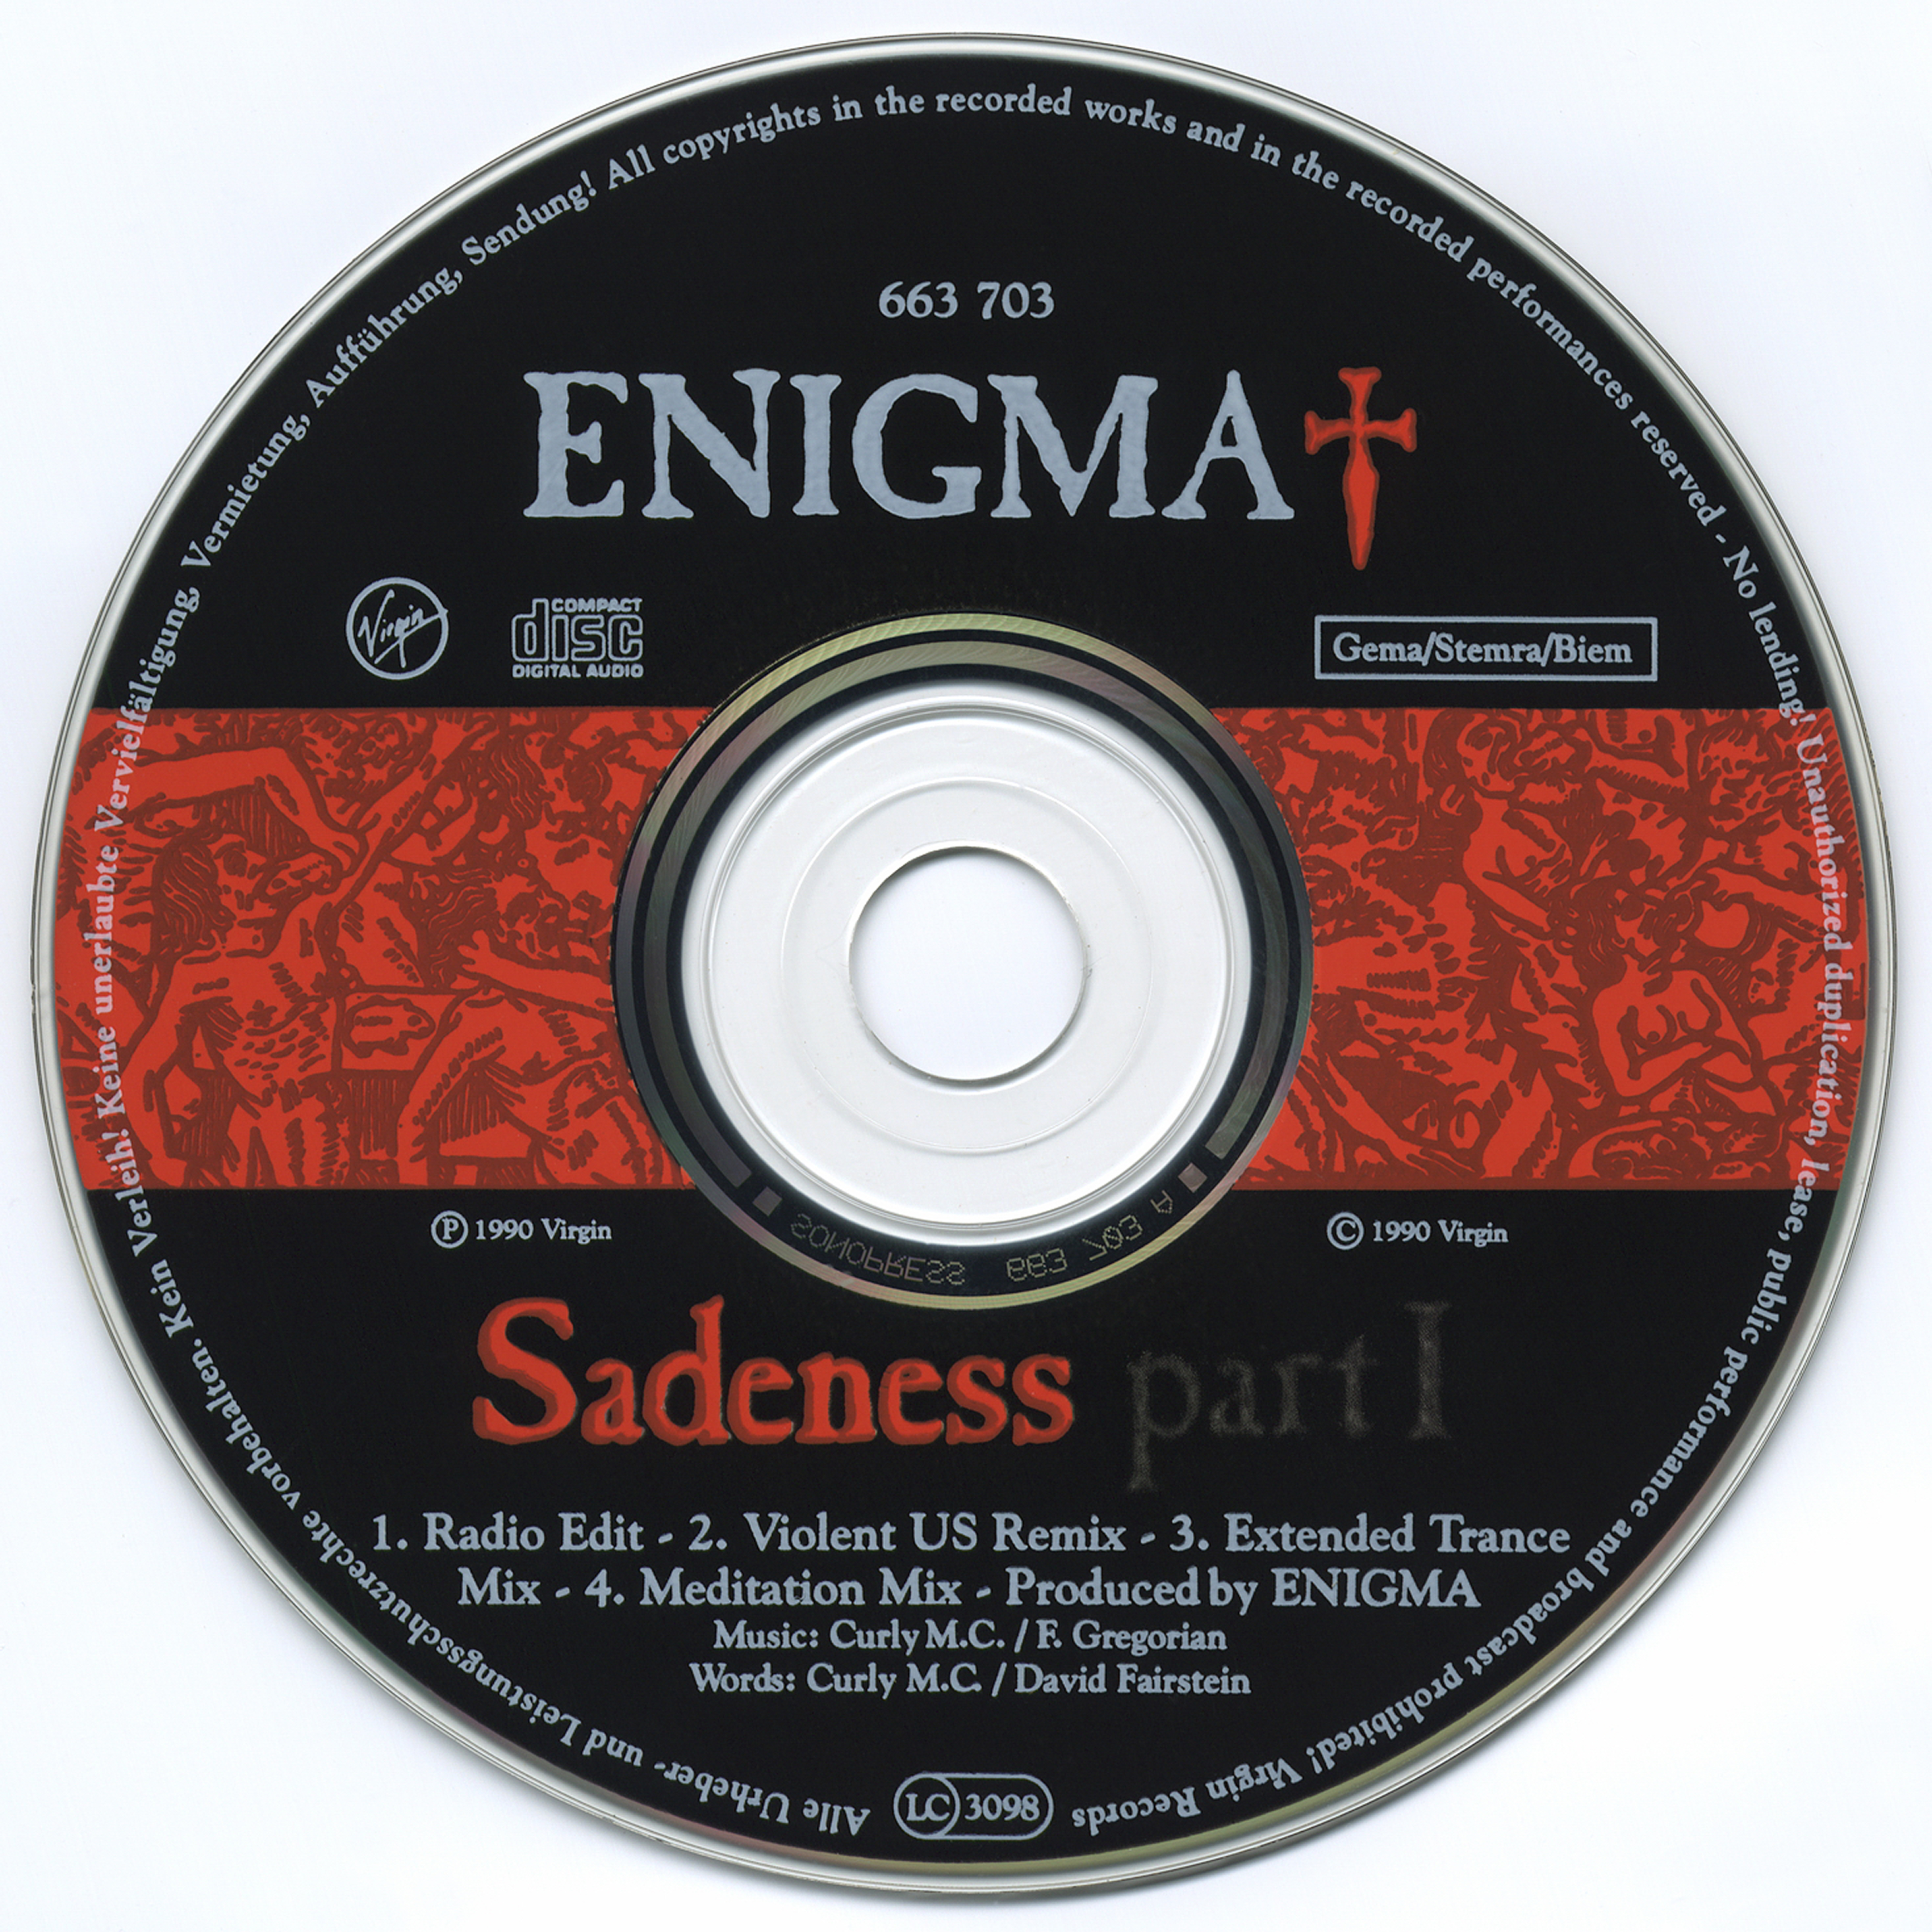 Слушать enigma в качестве. Enigma 1990 CD. Энигма Саденесс. Enigma Sadeness 1990. Enigma музыкальный проект.